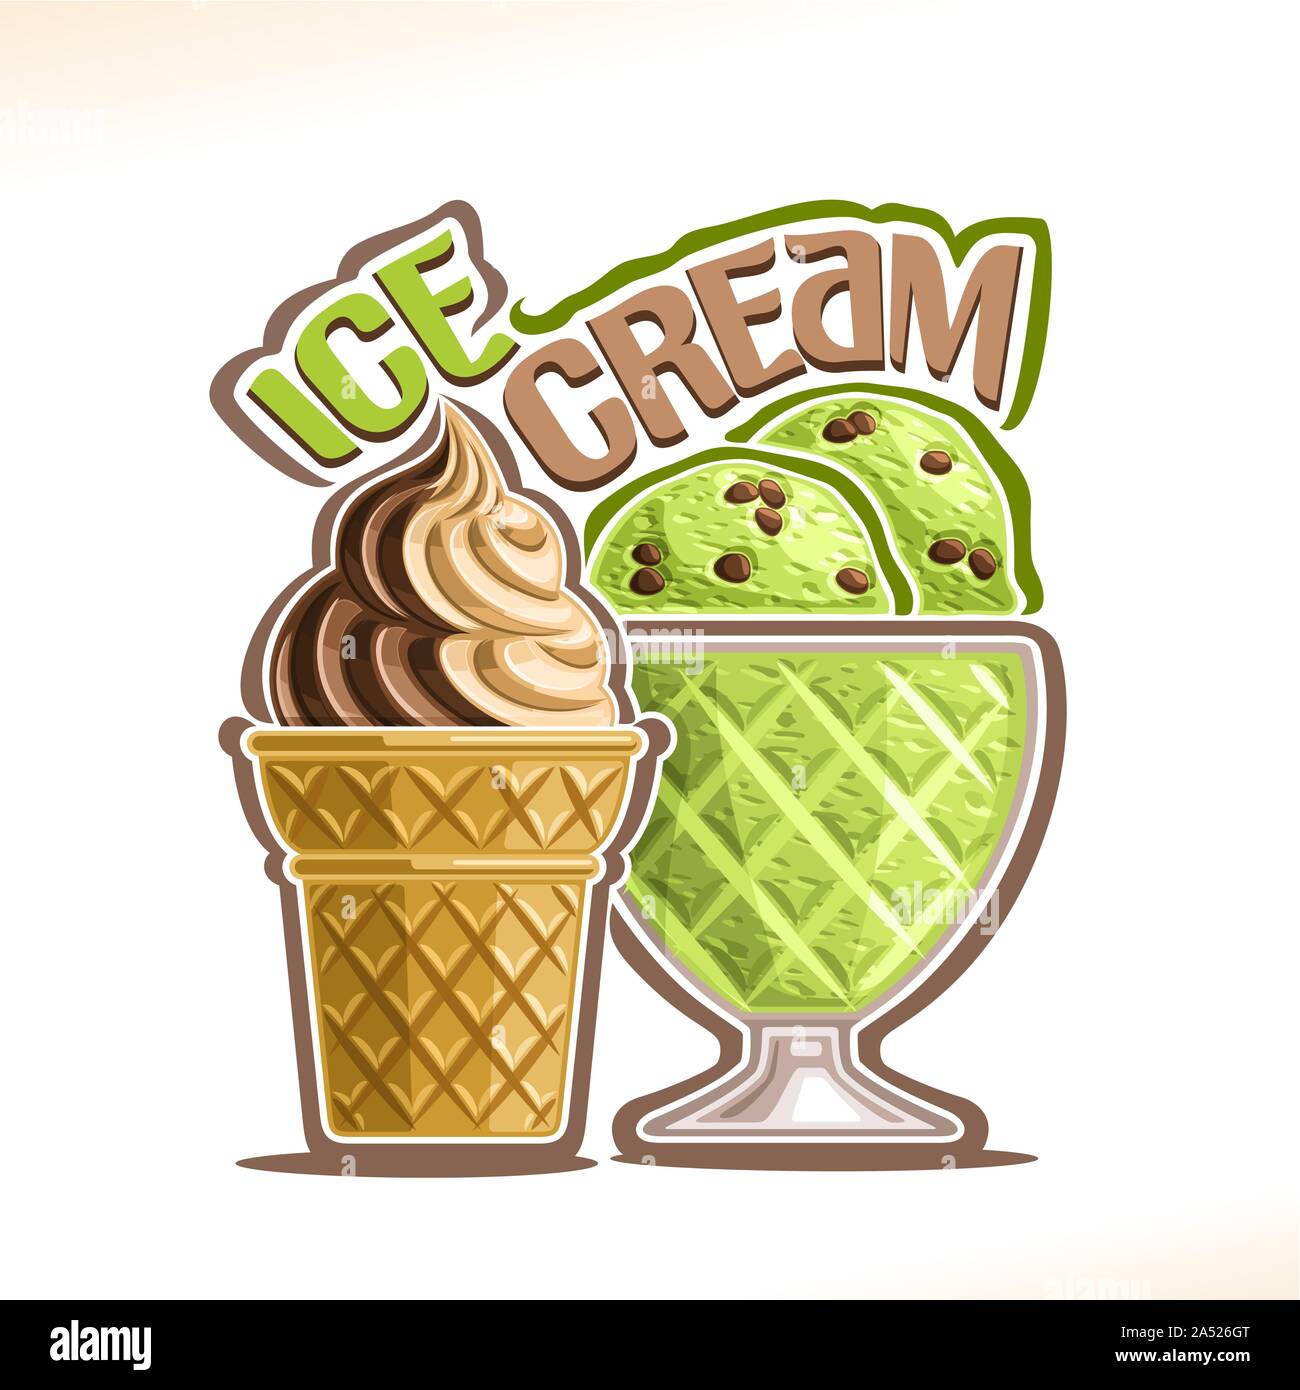 Illustration Vecteur de glace naturelle, crème molle avec l'affiche de chocolat crémeux icecream en cornet gaufré, vert menthe glaces italiennes avec choco chips Illustration de Vecteur